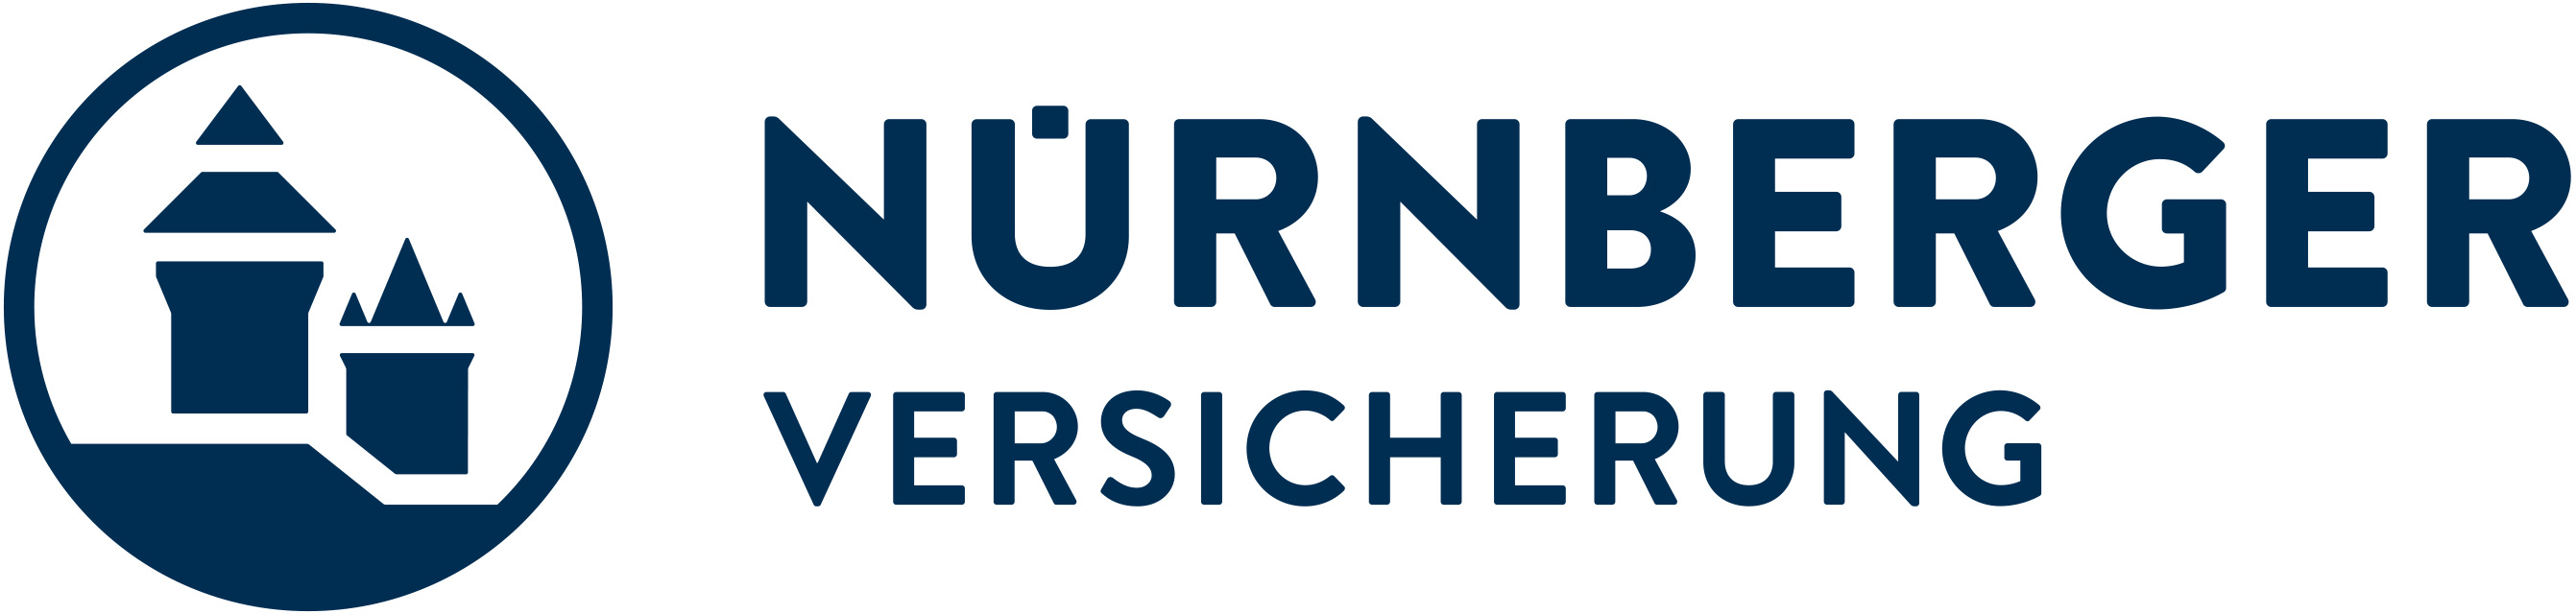 logo nuernberger versicherung